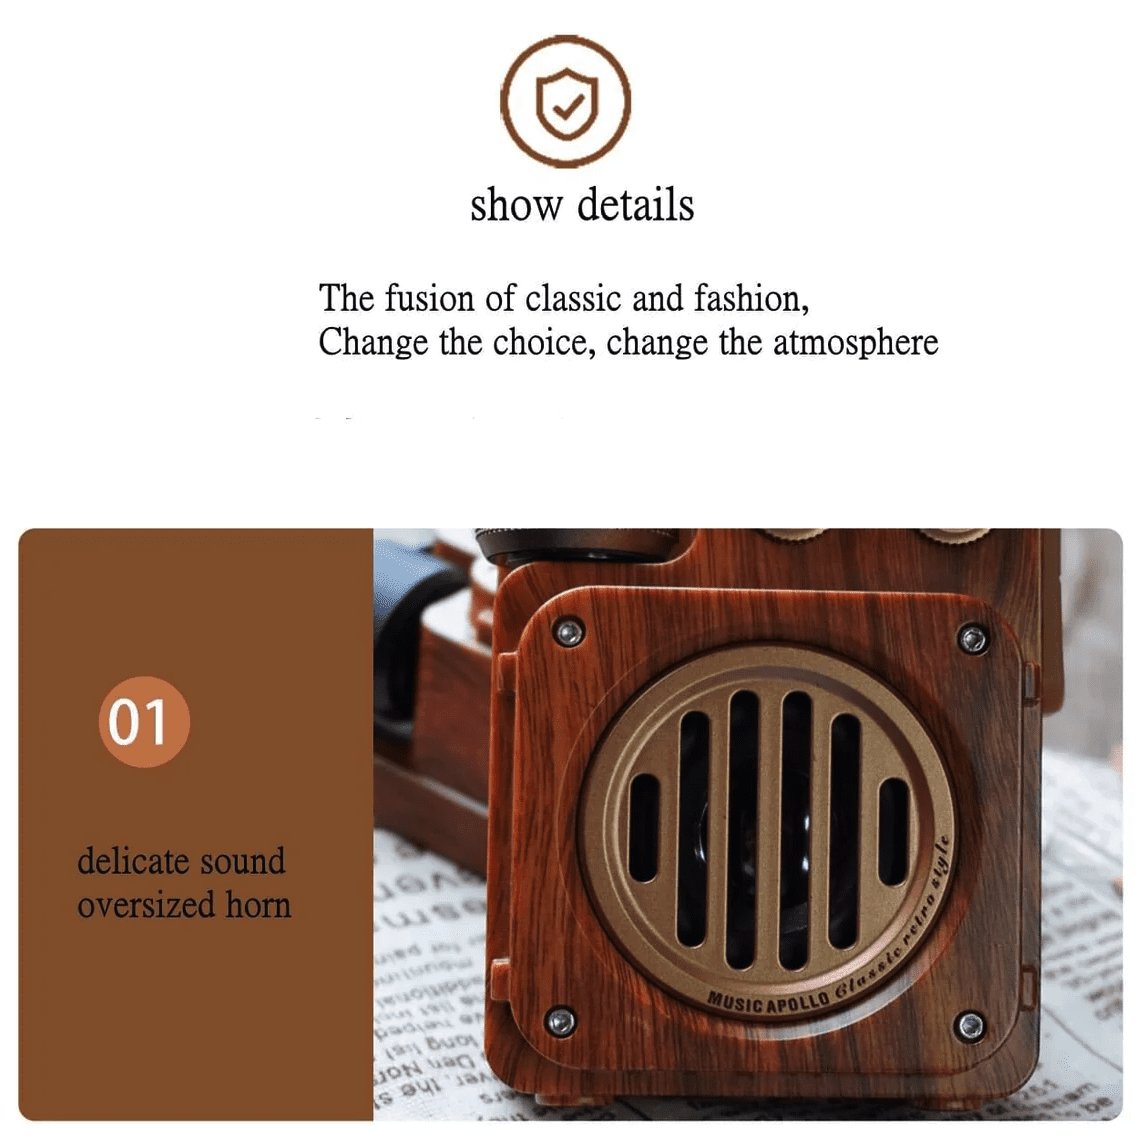 लकड़ी से बना रेडियो विंटेज रेट्रो रिसीवर डिजाइन